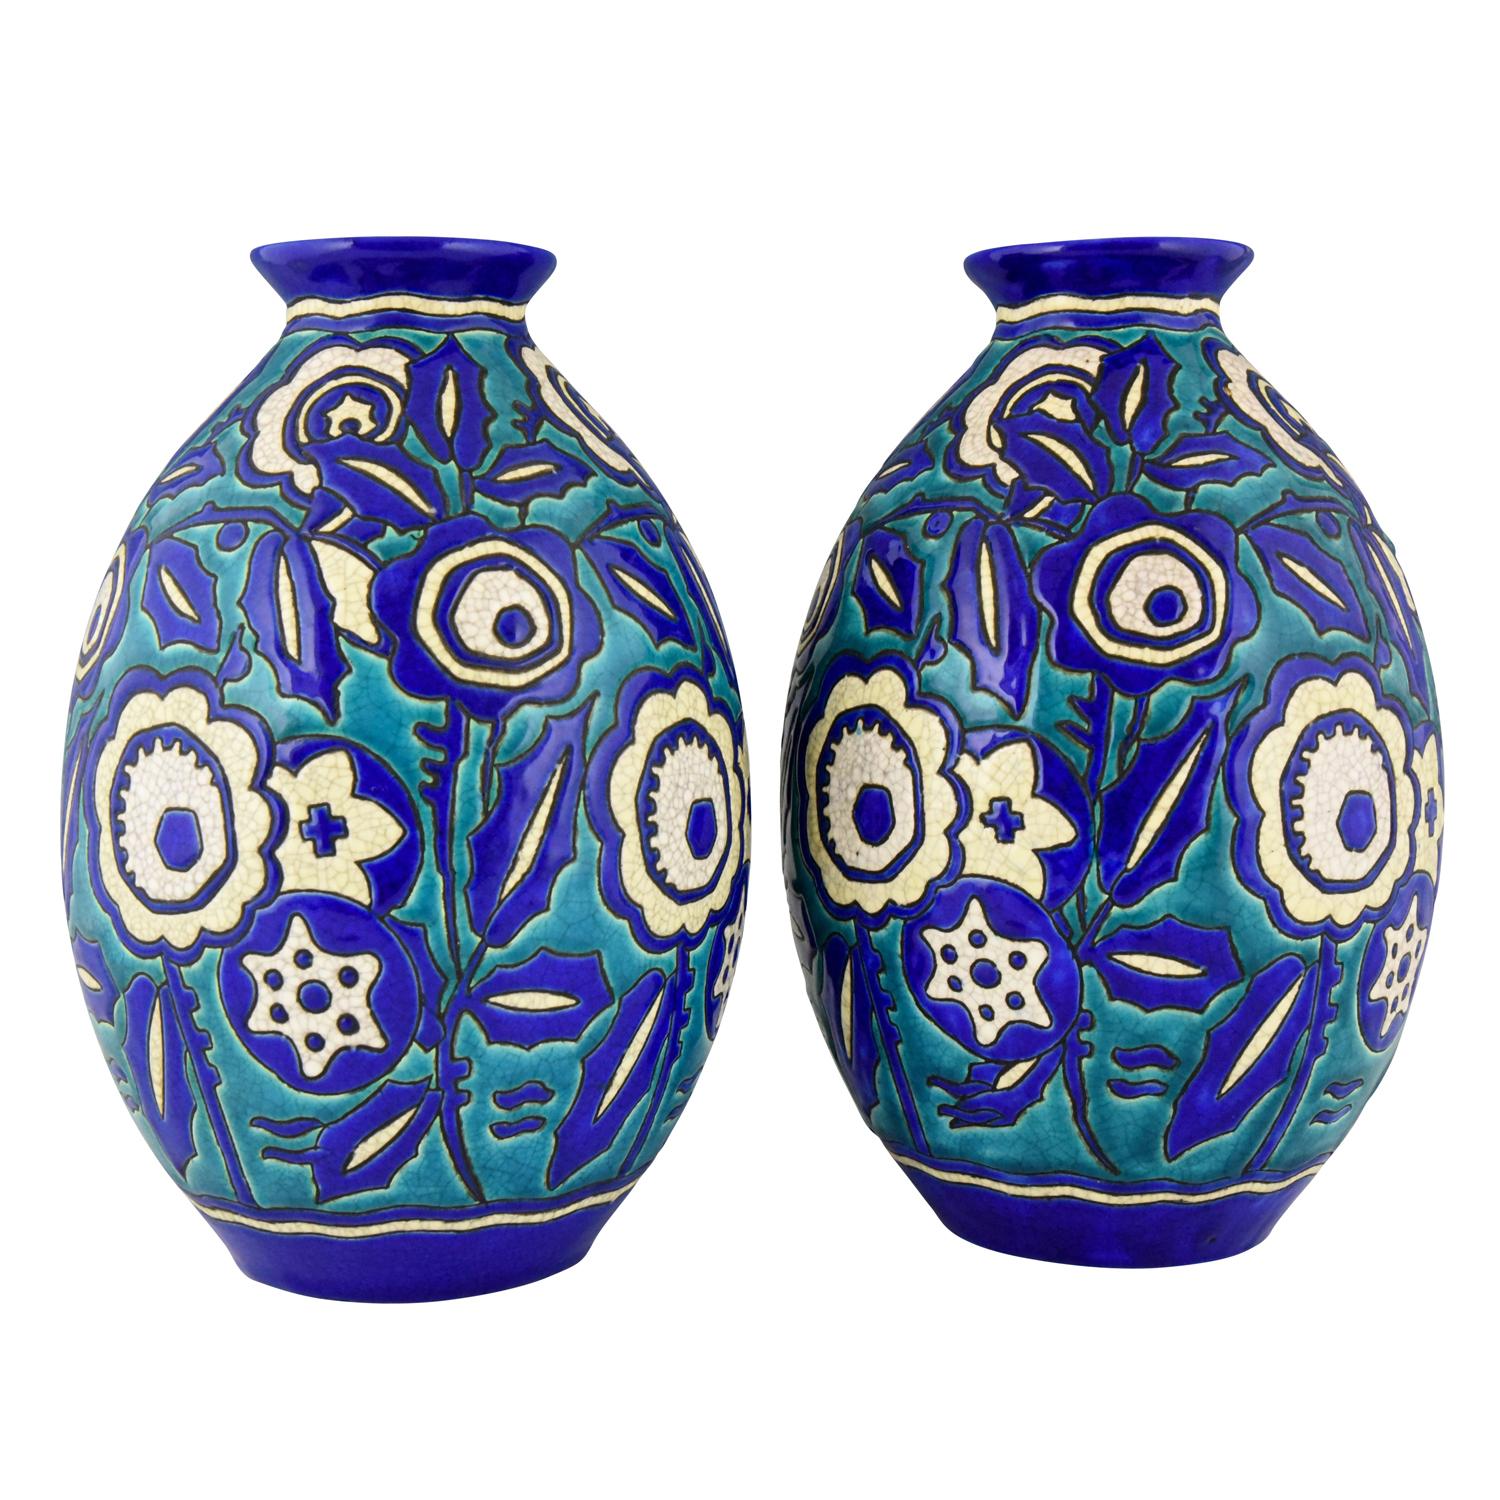 Pair of Art Deco Ceramic Craquelé Vases Flowers Charles Catteau for Keramis 1929